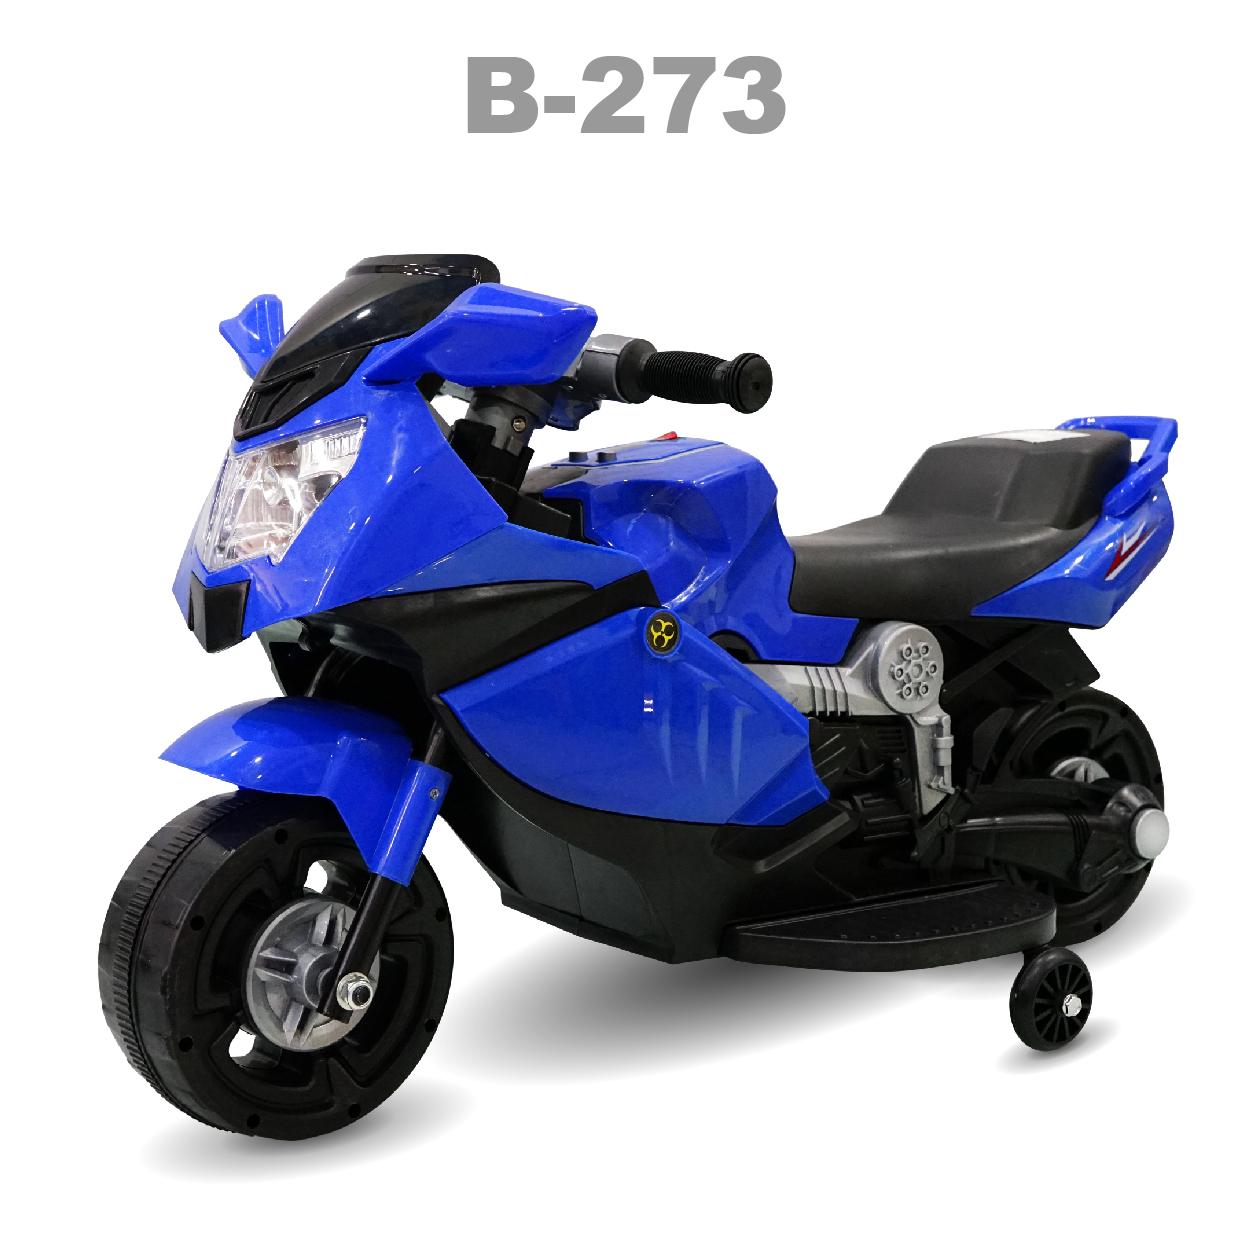 Xe mô tô trẻ em B-273